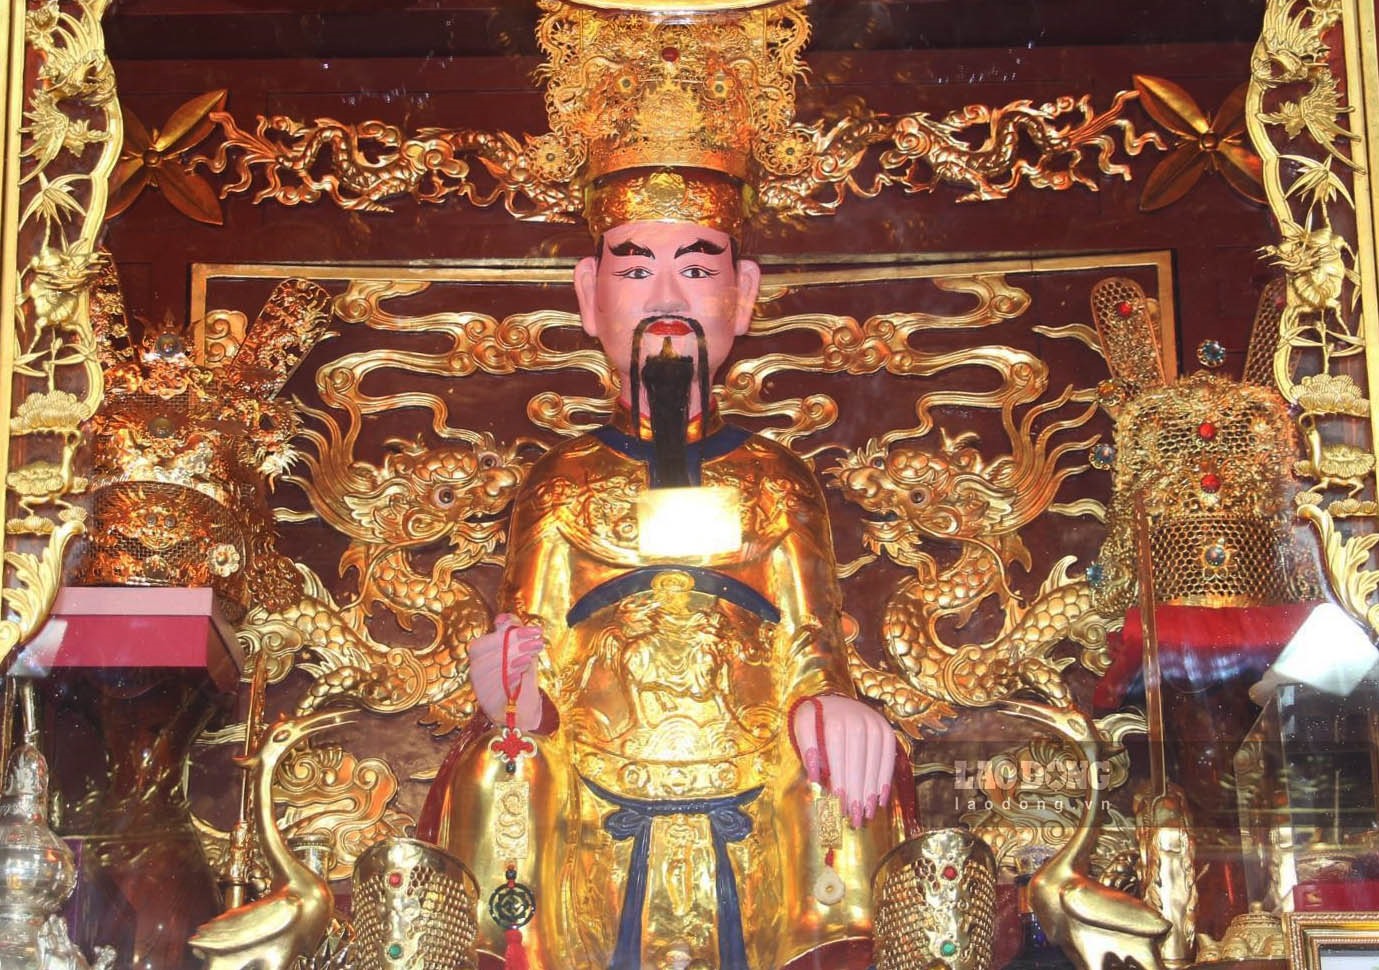 Đền Tranh thờ vị quan Tuần Phủ được giao cai quản ngã 3 sông Chanh, nơi giao nhau của 3 vùng đất Ninh Giang (Hải Dương) - Vĩnh Bảo (Hải Phòng) - Thái Bình.